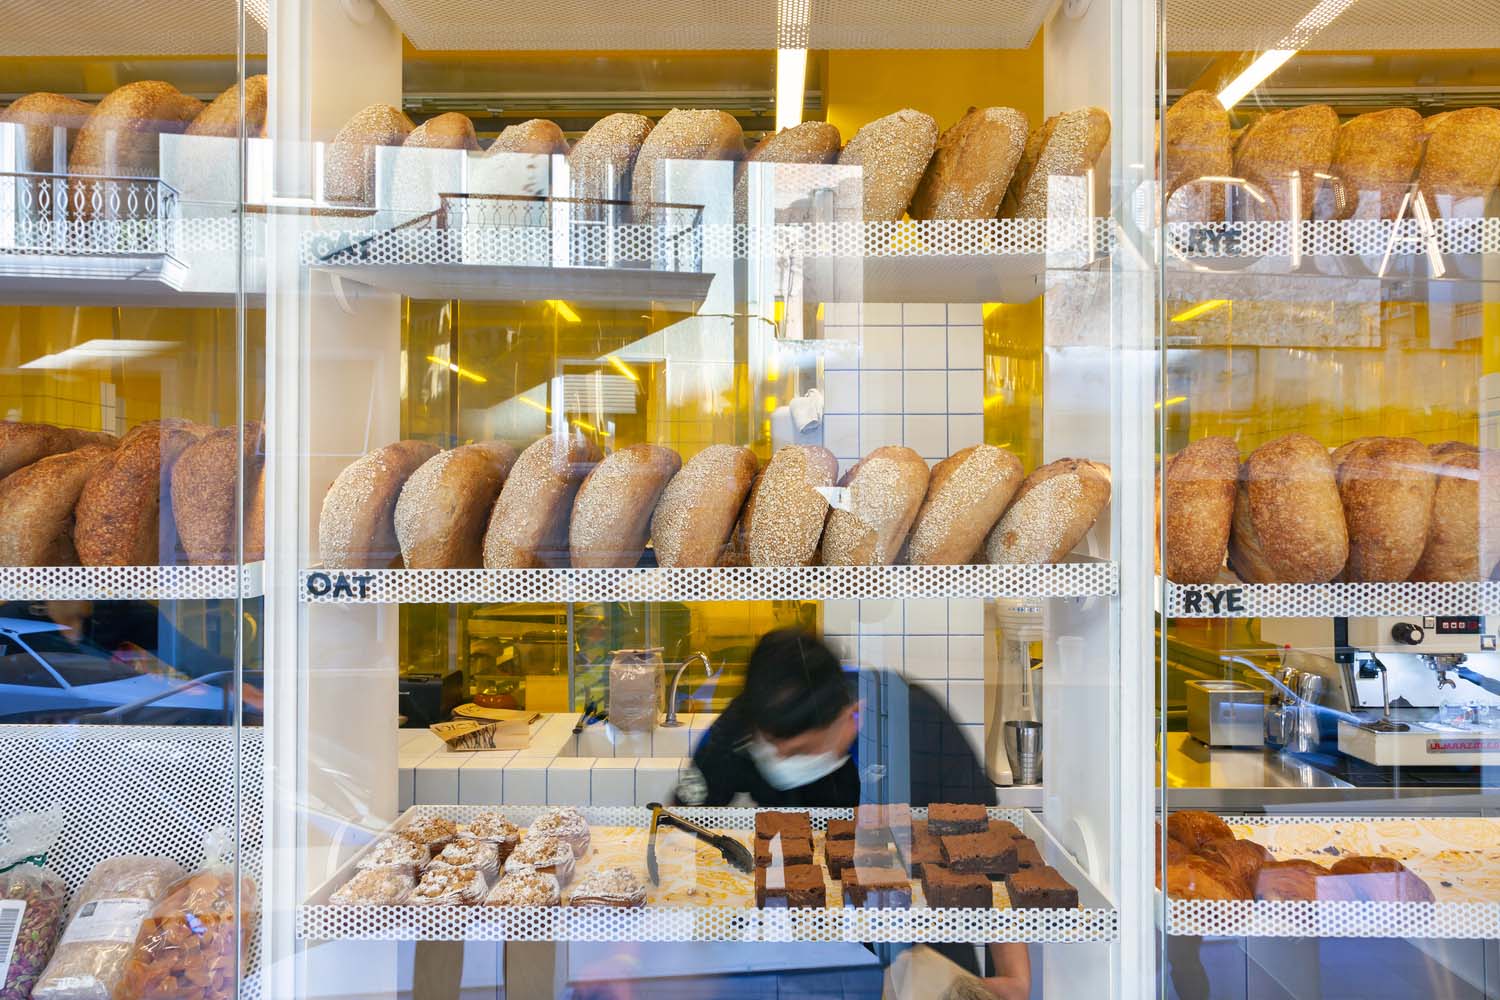 面包店设计,面包店设计案例,烘焙店,Kora Bakery,面包店装修,面包坊,雅典,希腊,面包店设计方案